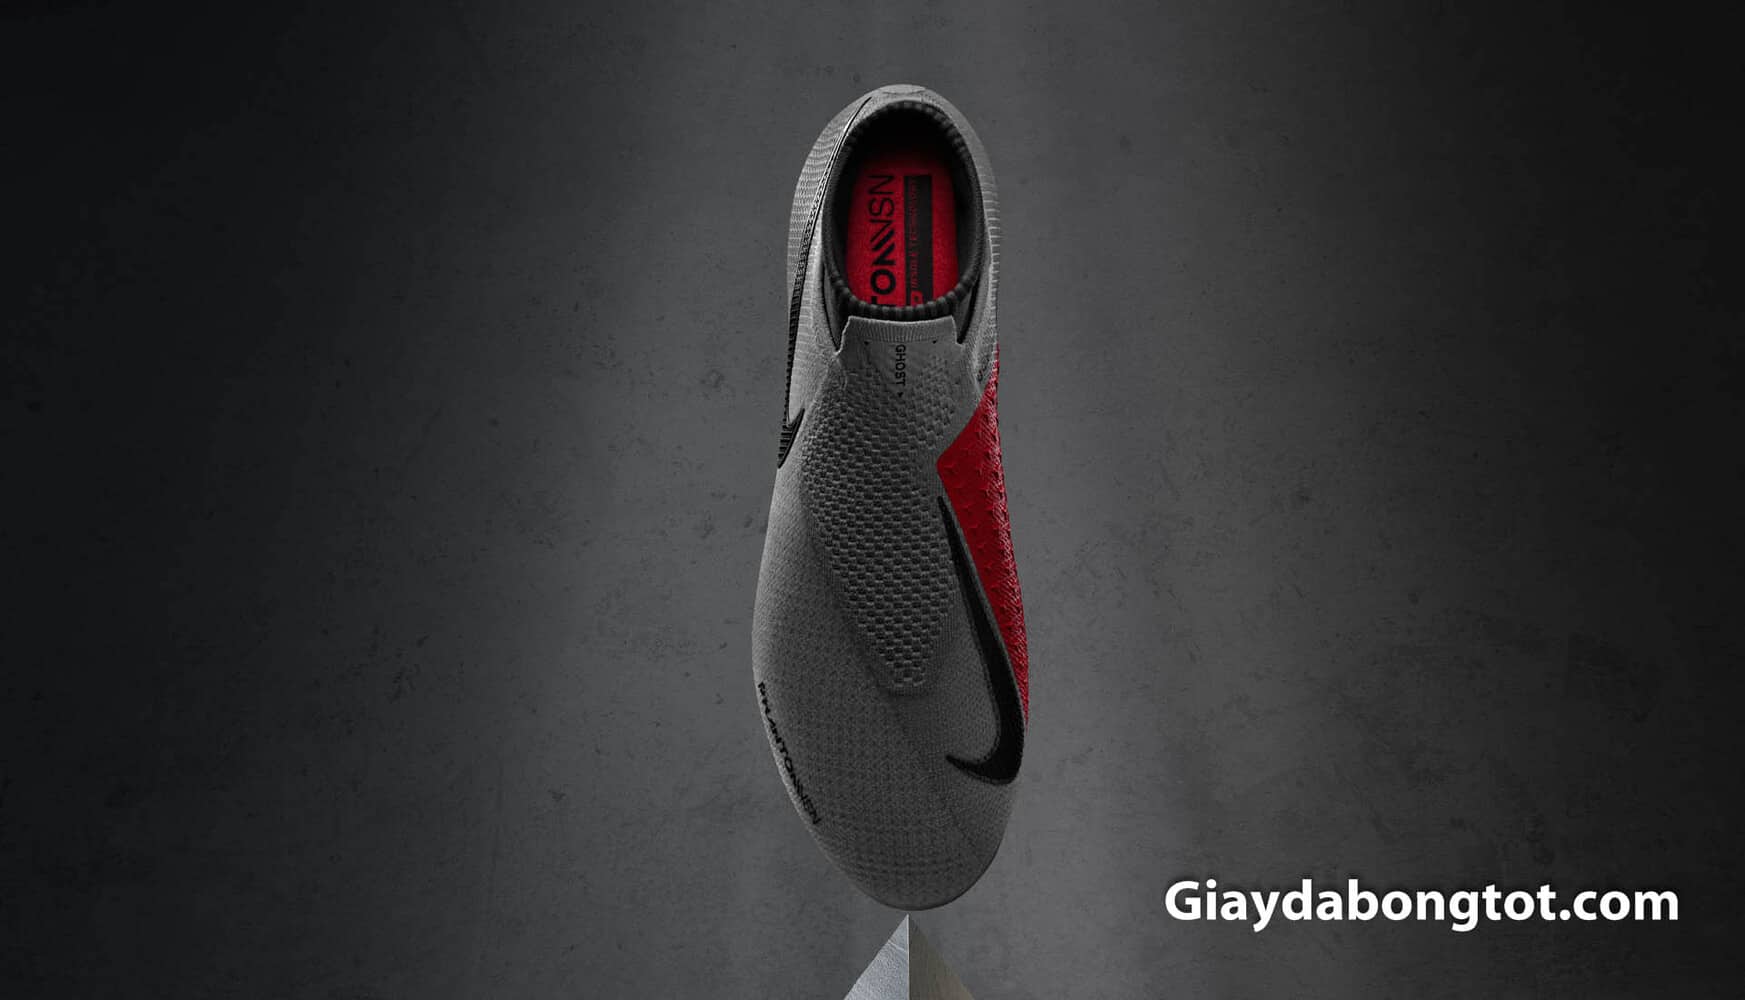 Giày đá bóng Nike Phantom Vison là mẫu giày đầu tiên được áp dụng công nghệ Quadfit tăng sự ôm chân cho giày đá bóng